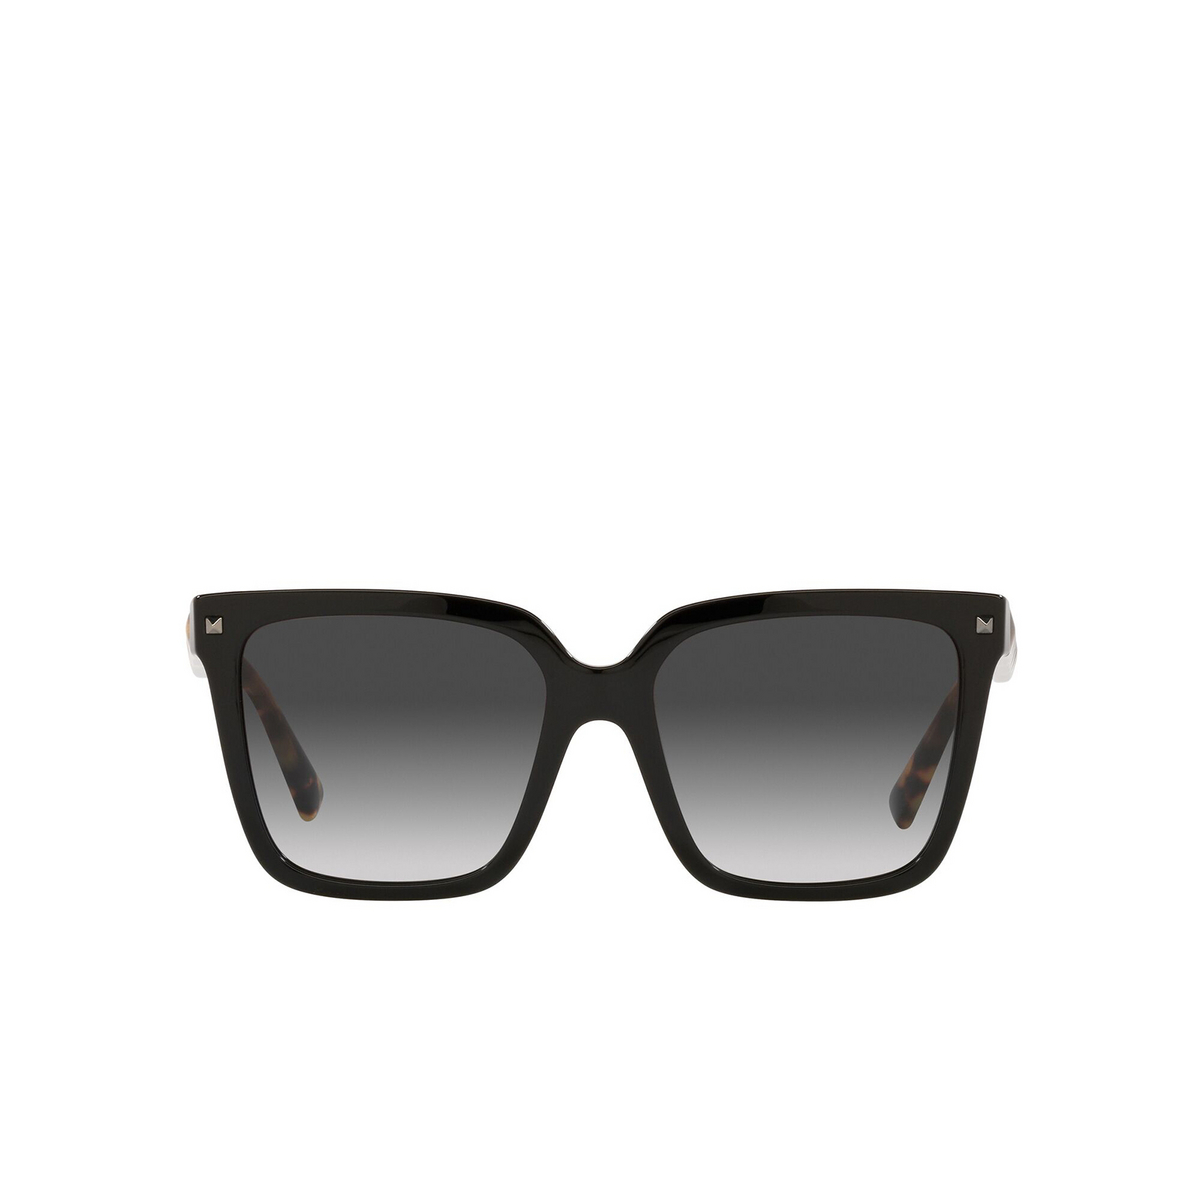 Valentino® Square Sunglasses: VA4098 color Black 50018G - front view.